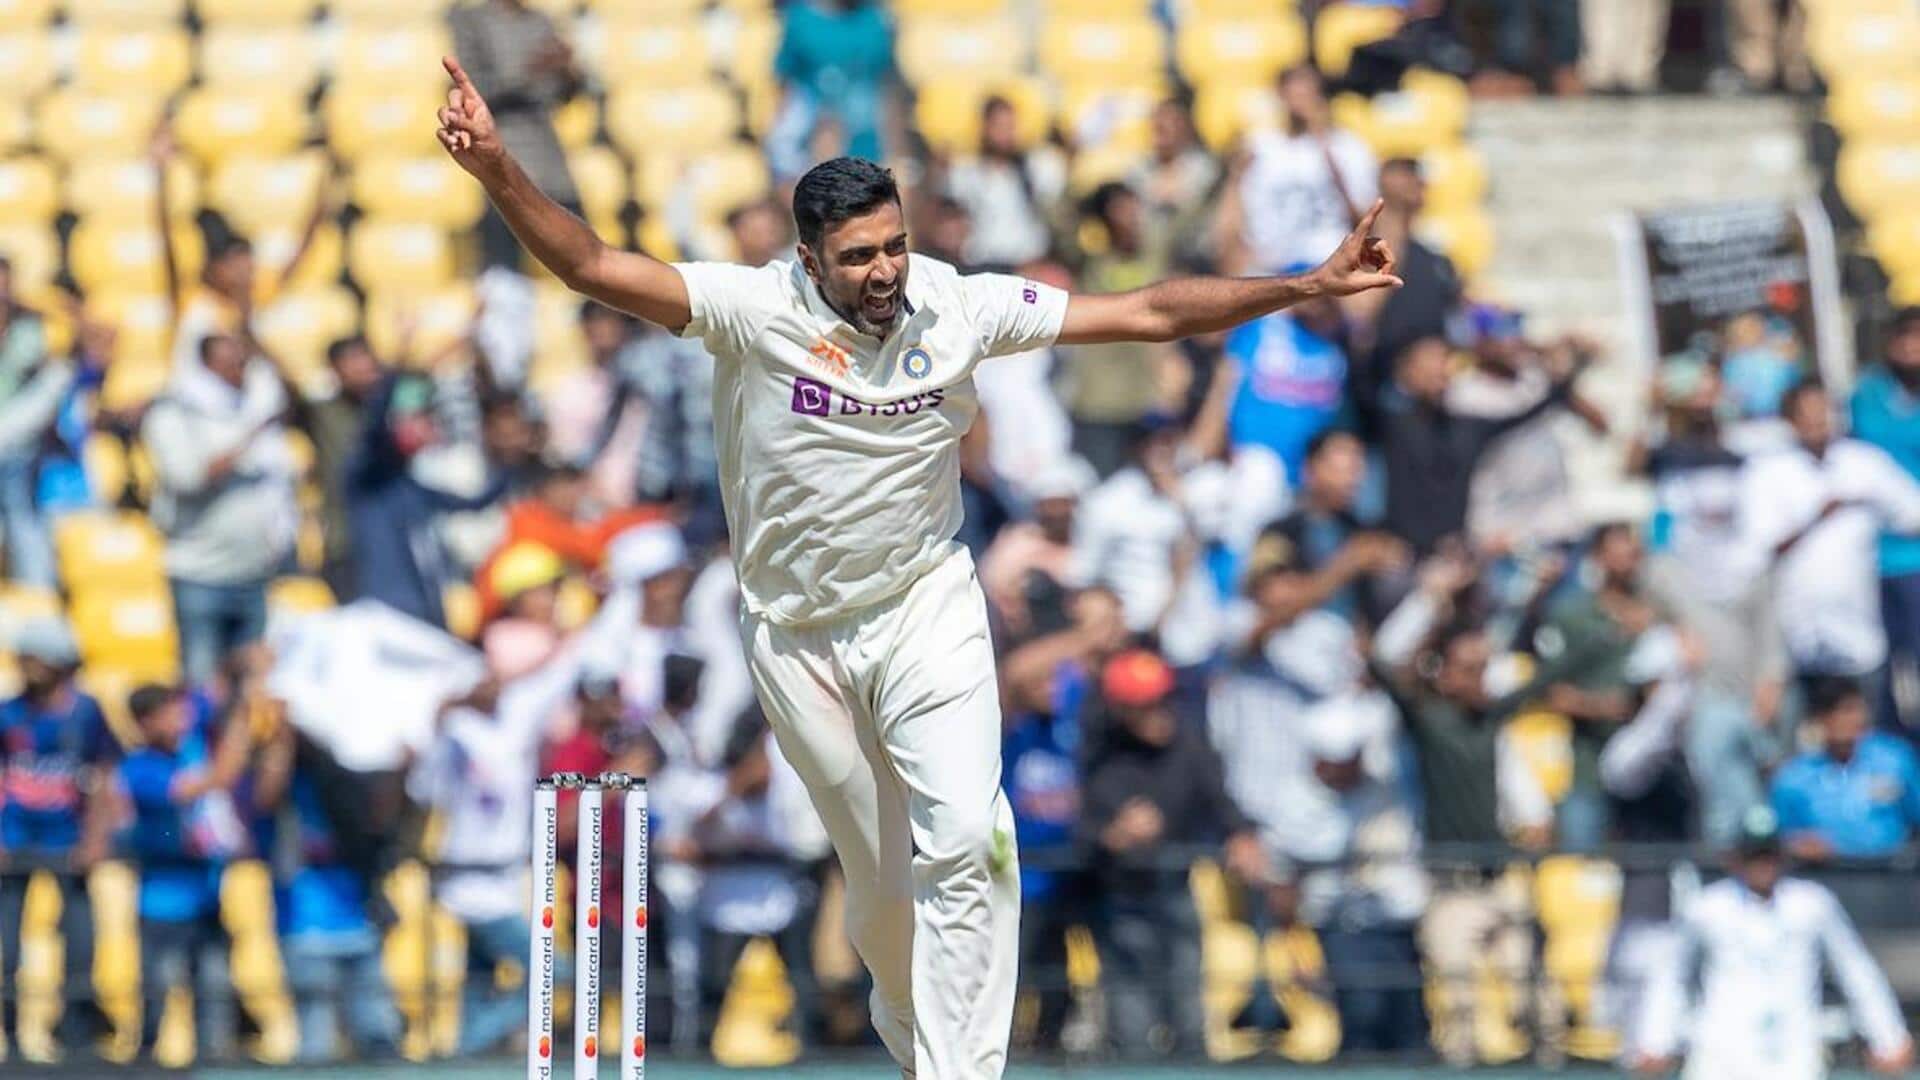 रविचंद्रन अश्विन भारत में सर्वाधिक टेस्ट विकेट लेने वाले गेंदबाज बने, अनिल कुंबले को पीछे छोड़ा 